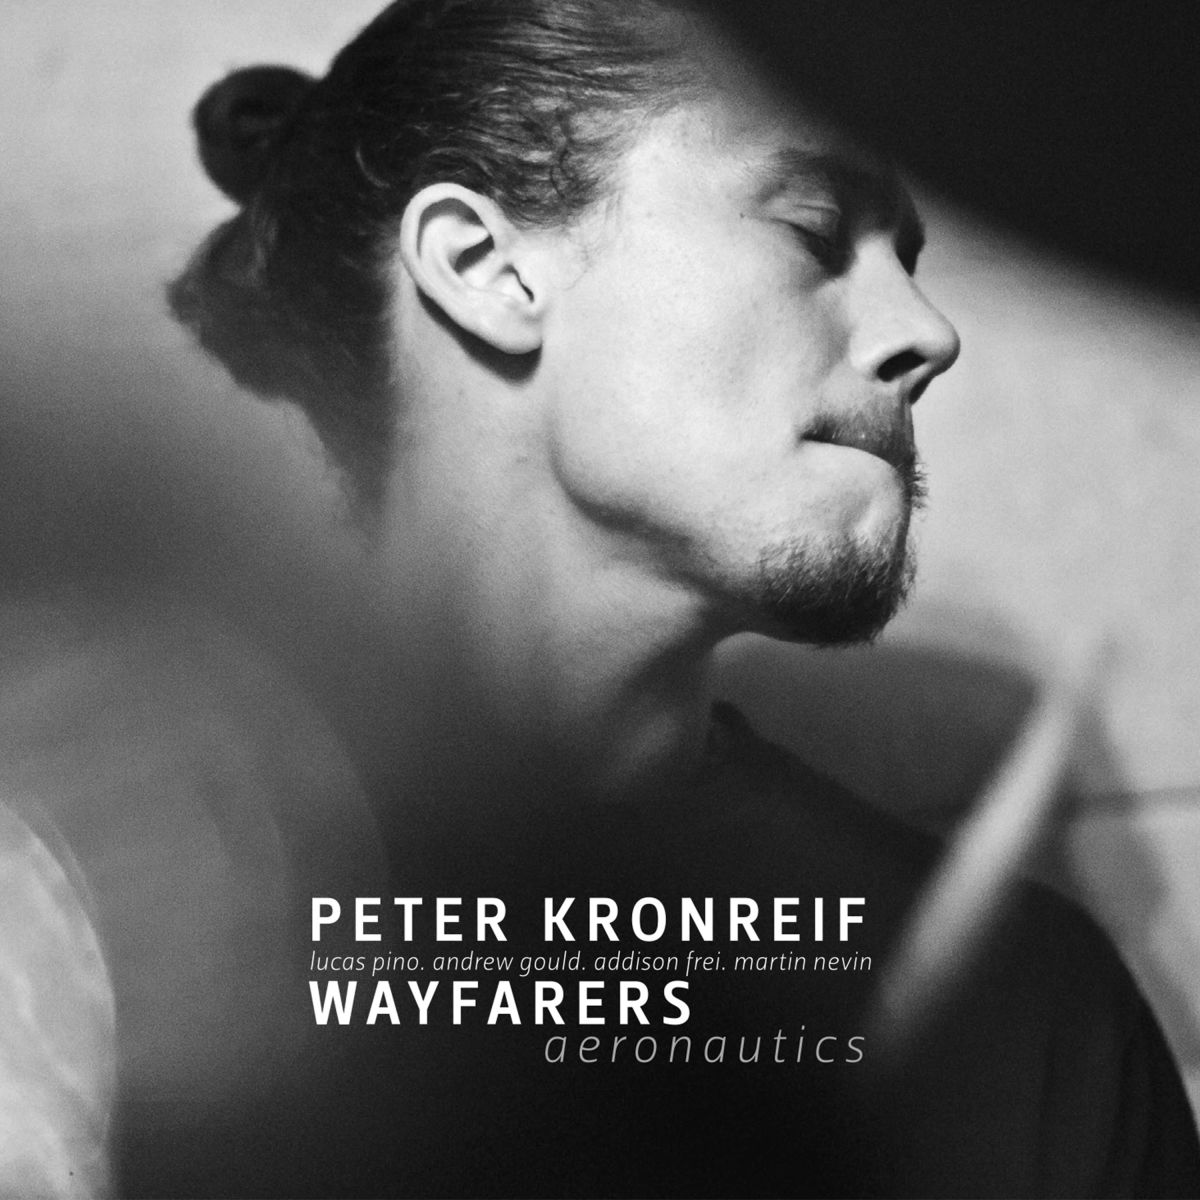 Peter Kronreif